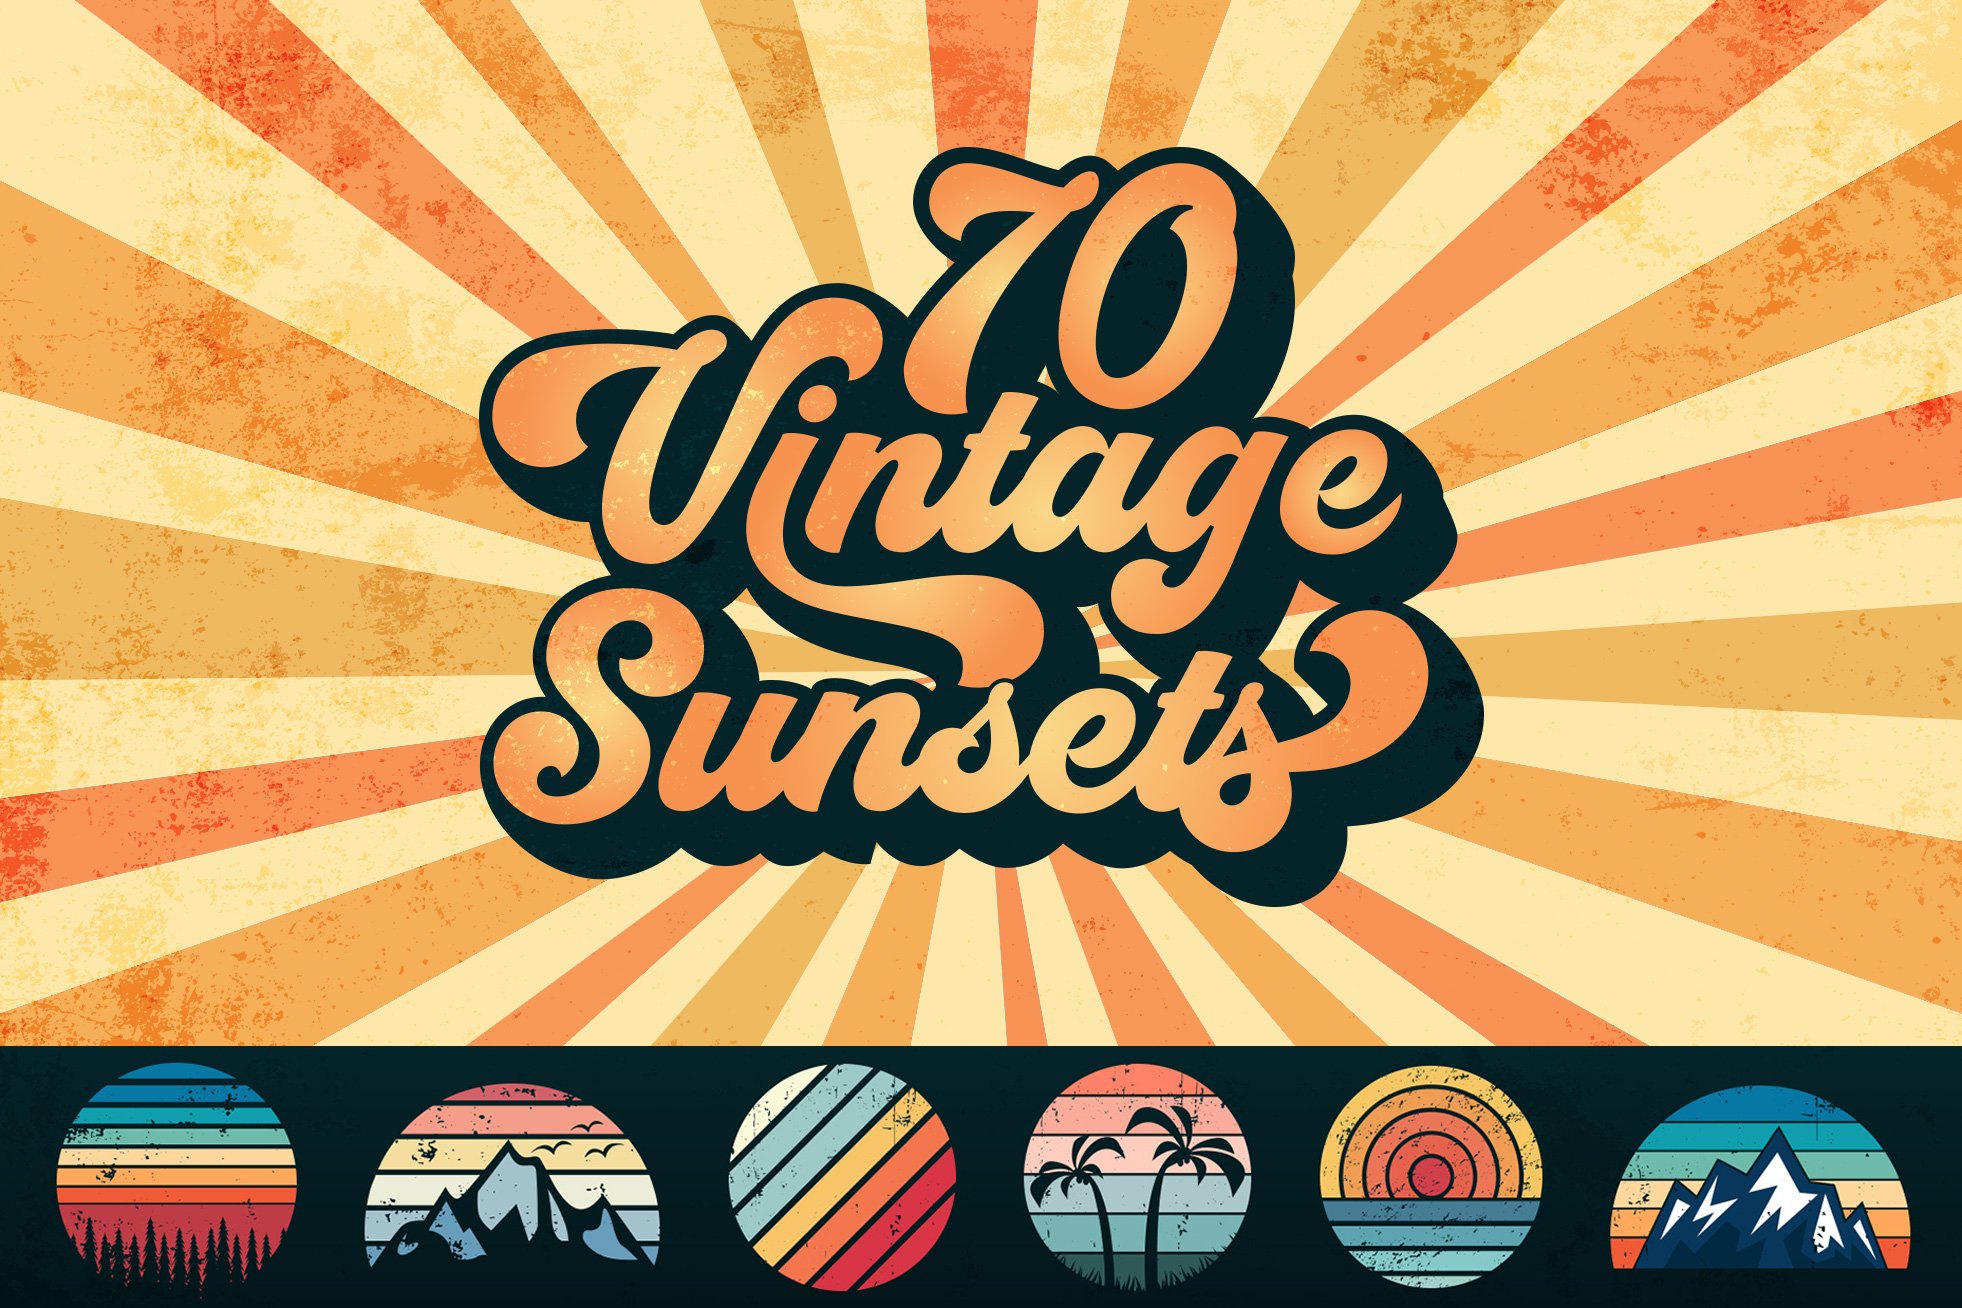 70 Vintage Sunset Bundle SVG PNG PDF cover image.